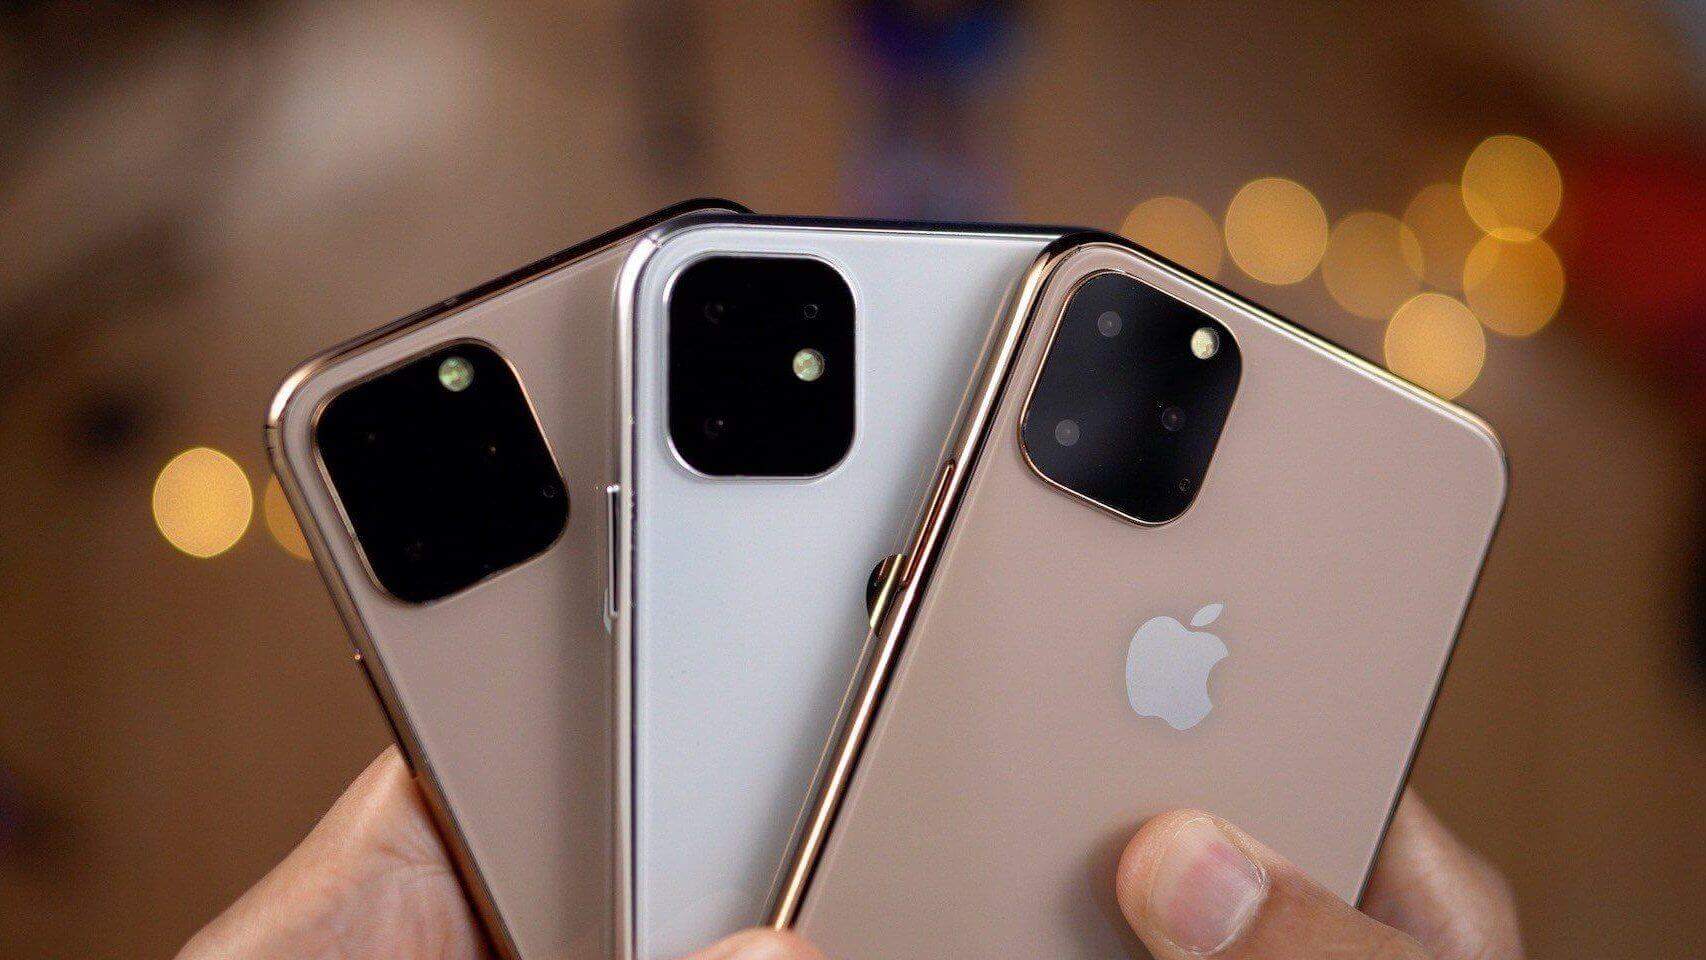 В следующем году Apple выпустит на один флагманский iPhone больше, чем в этом